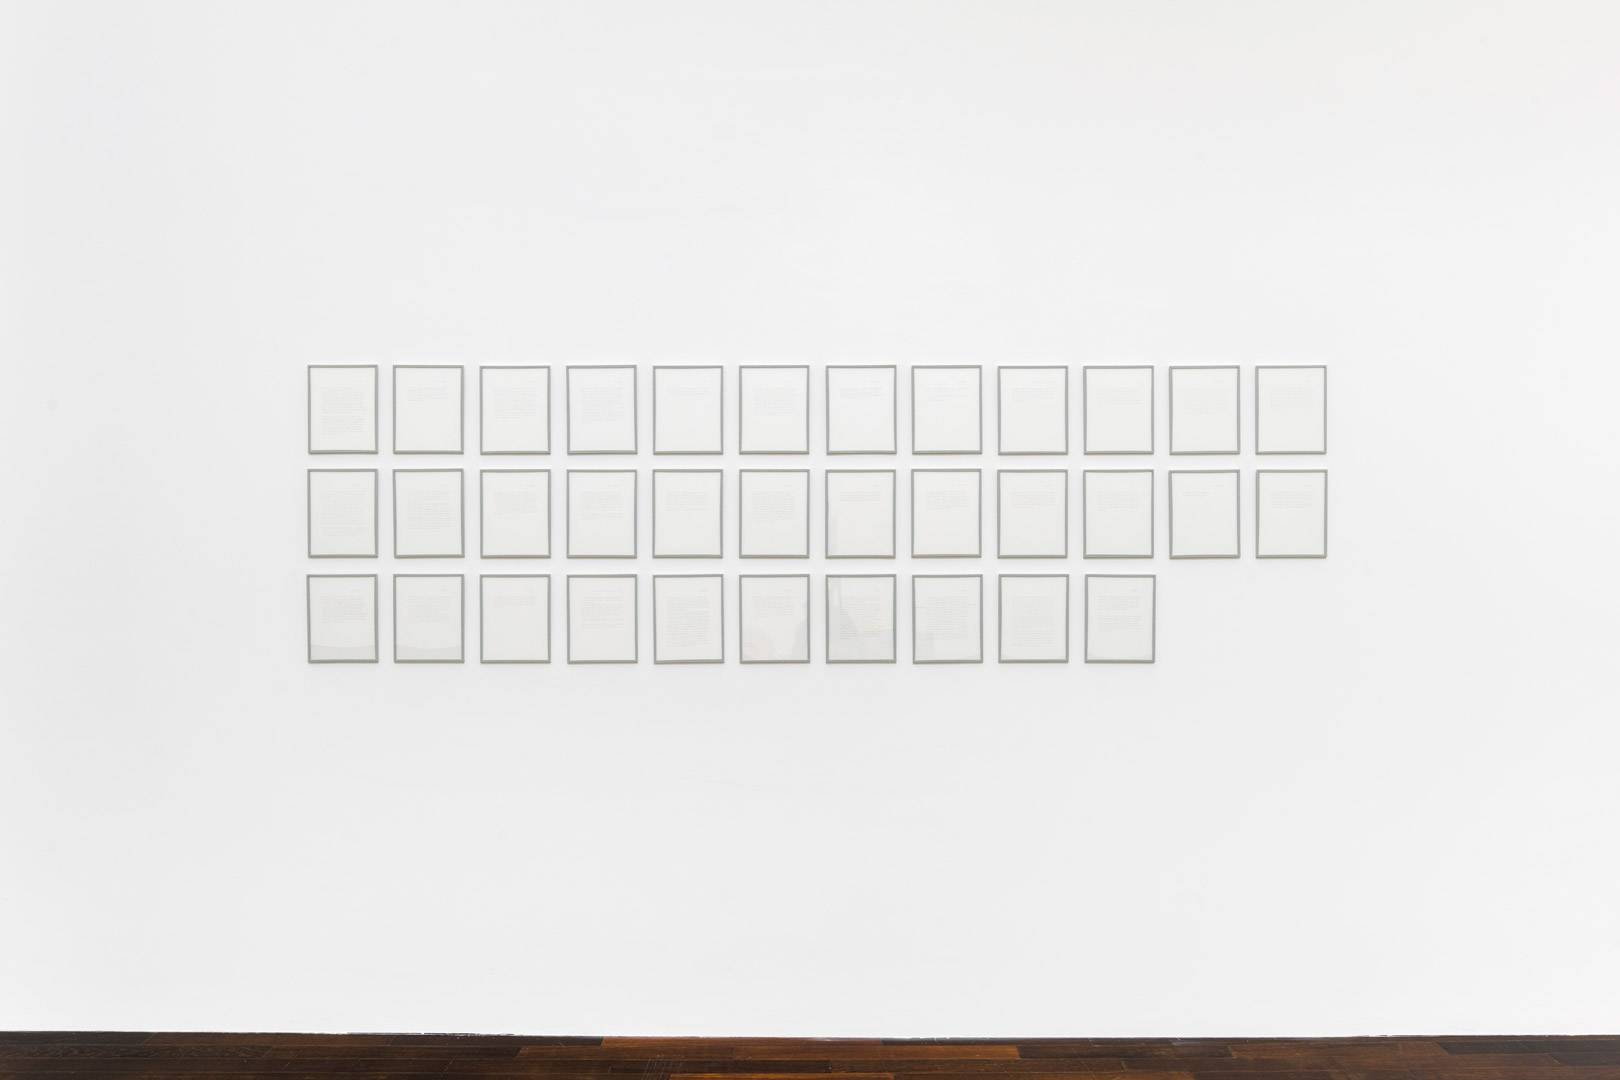 Vue d'exposition au MAC VAL de l'installation intitulée "Soliloques". L'installation comporte un ensemble de 34 textes encadrés accrochés au mur.